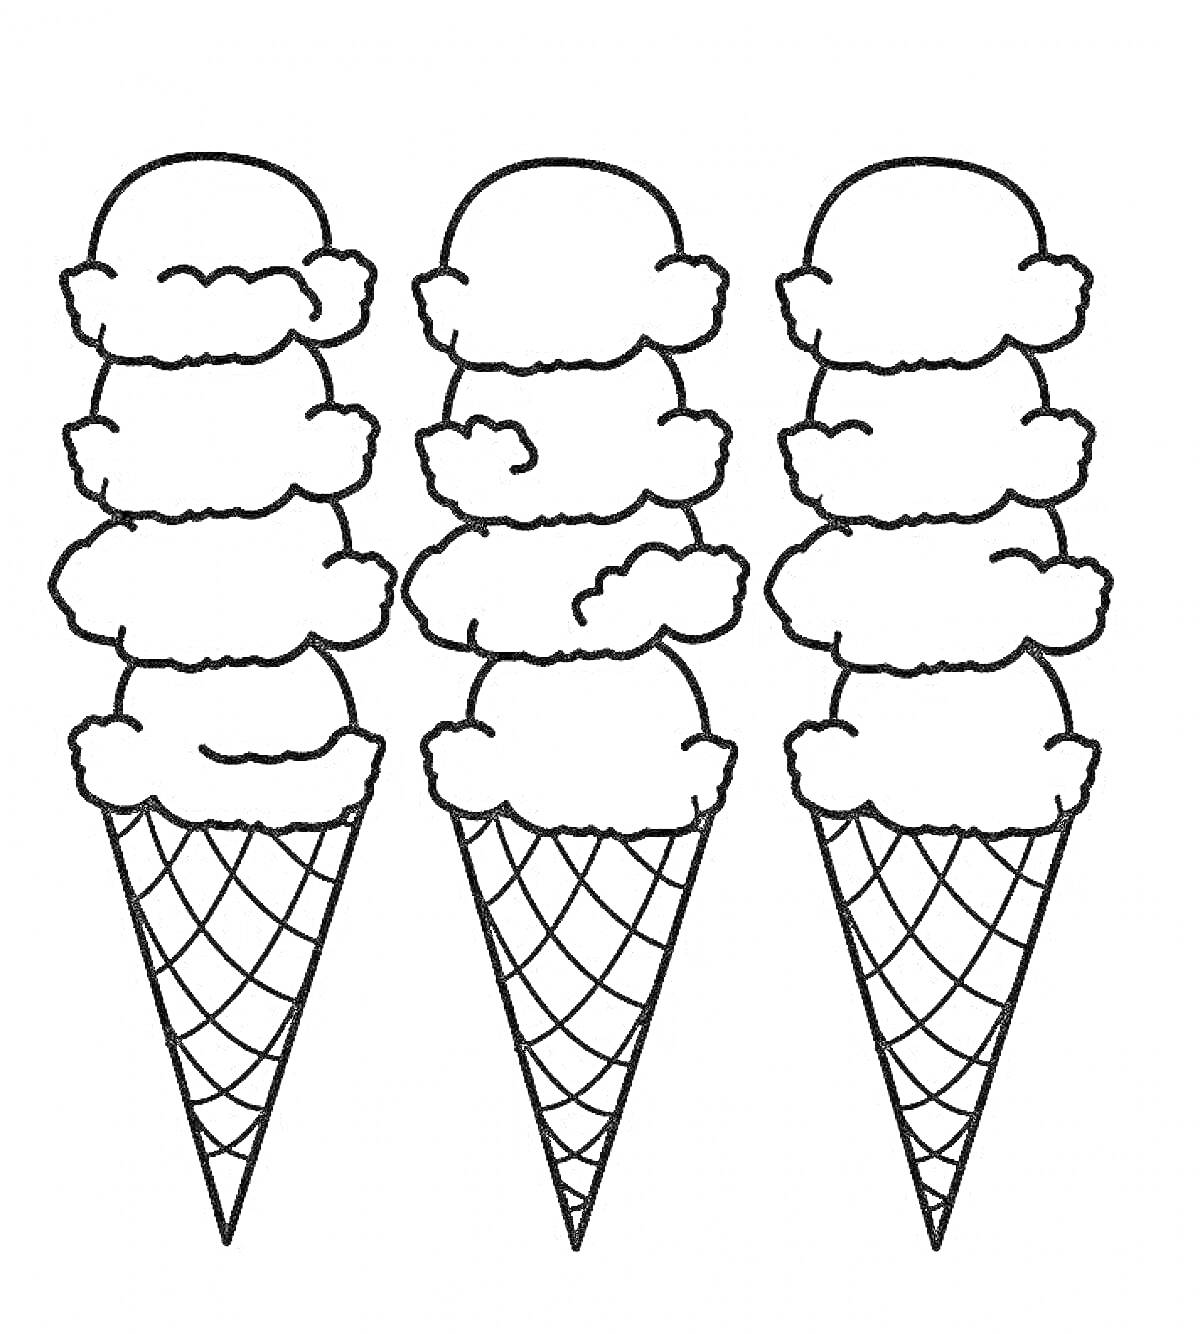 Раскраска Три вафельных рожка мороженого с четырьмя шариками каждый